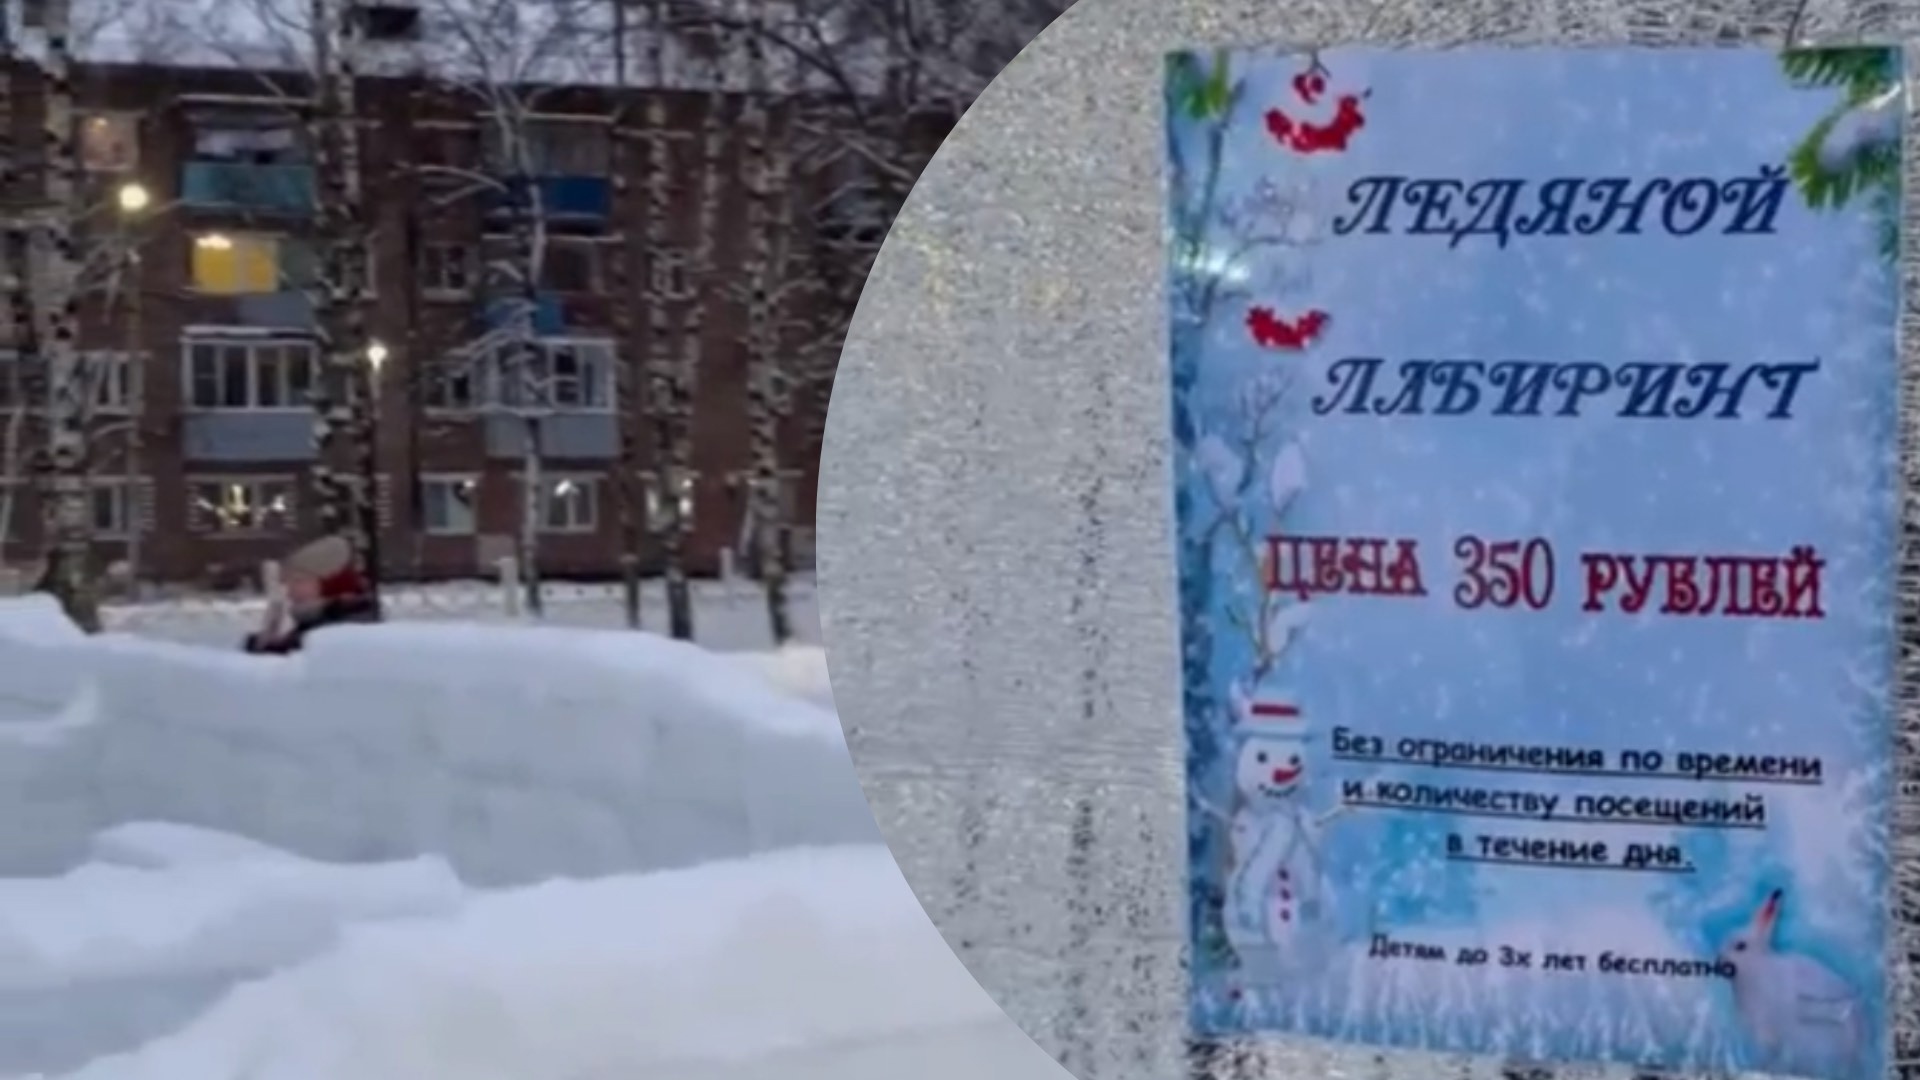 "Полтинник - красная цена": ярославцы раскритиковали новый ледяной городок